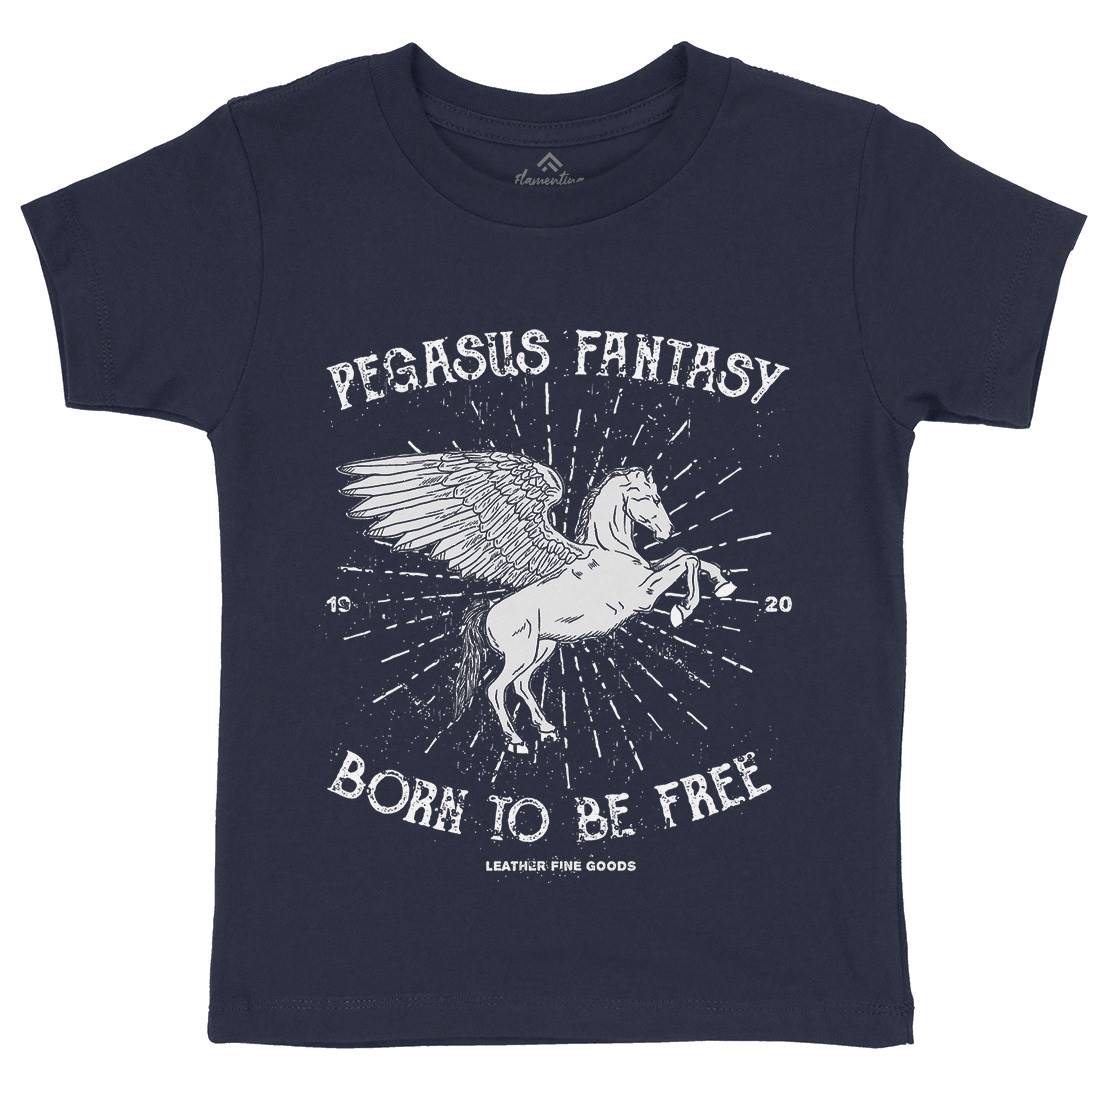 Pegasus Fantasy Kids Organic Crew Neck T-Shirt Animals B749